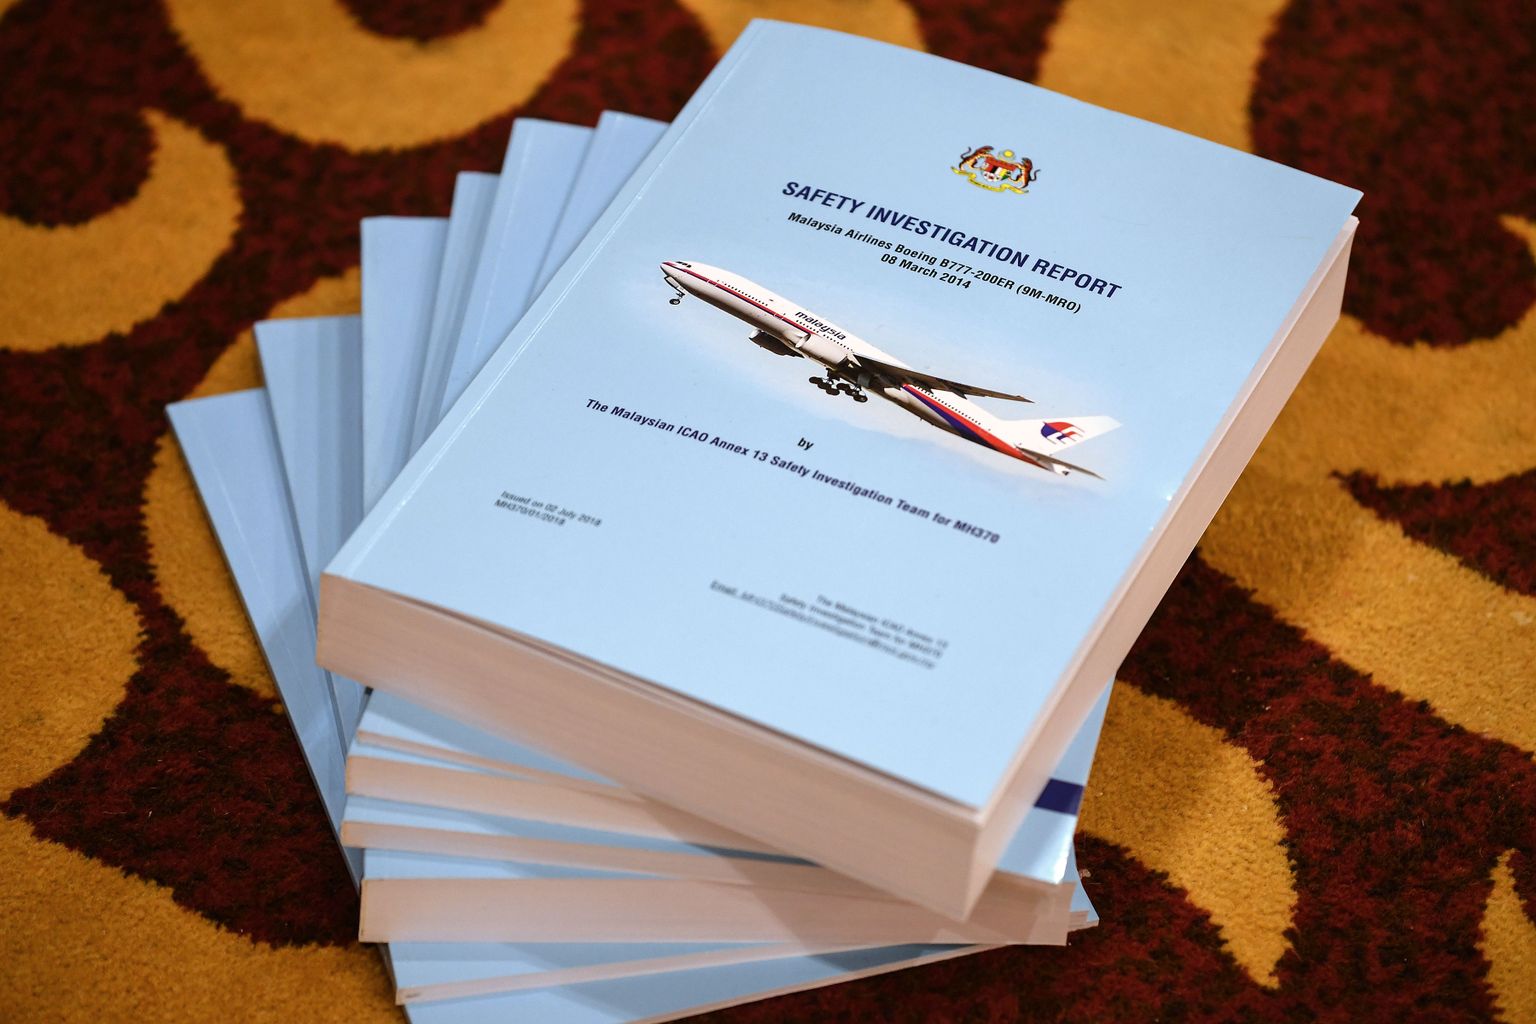 MH370 lennuõnnetuse kohta täna avaldatud raport.